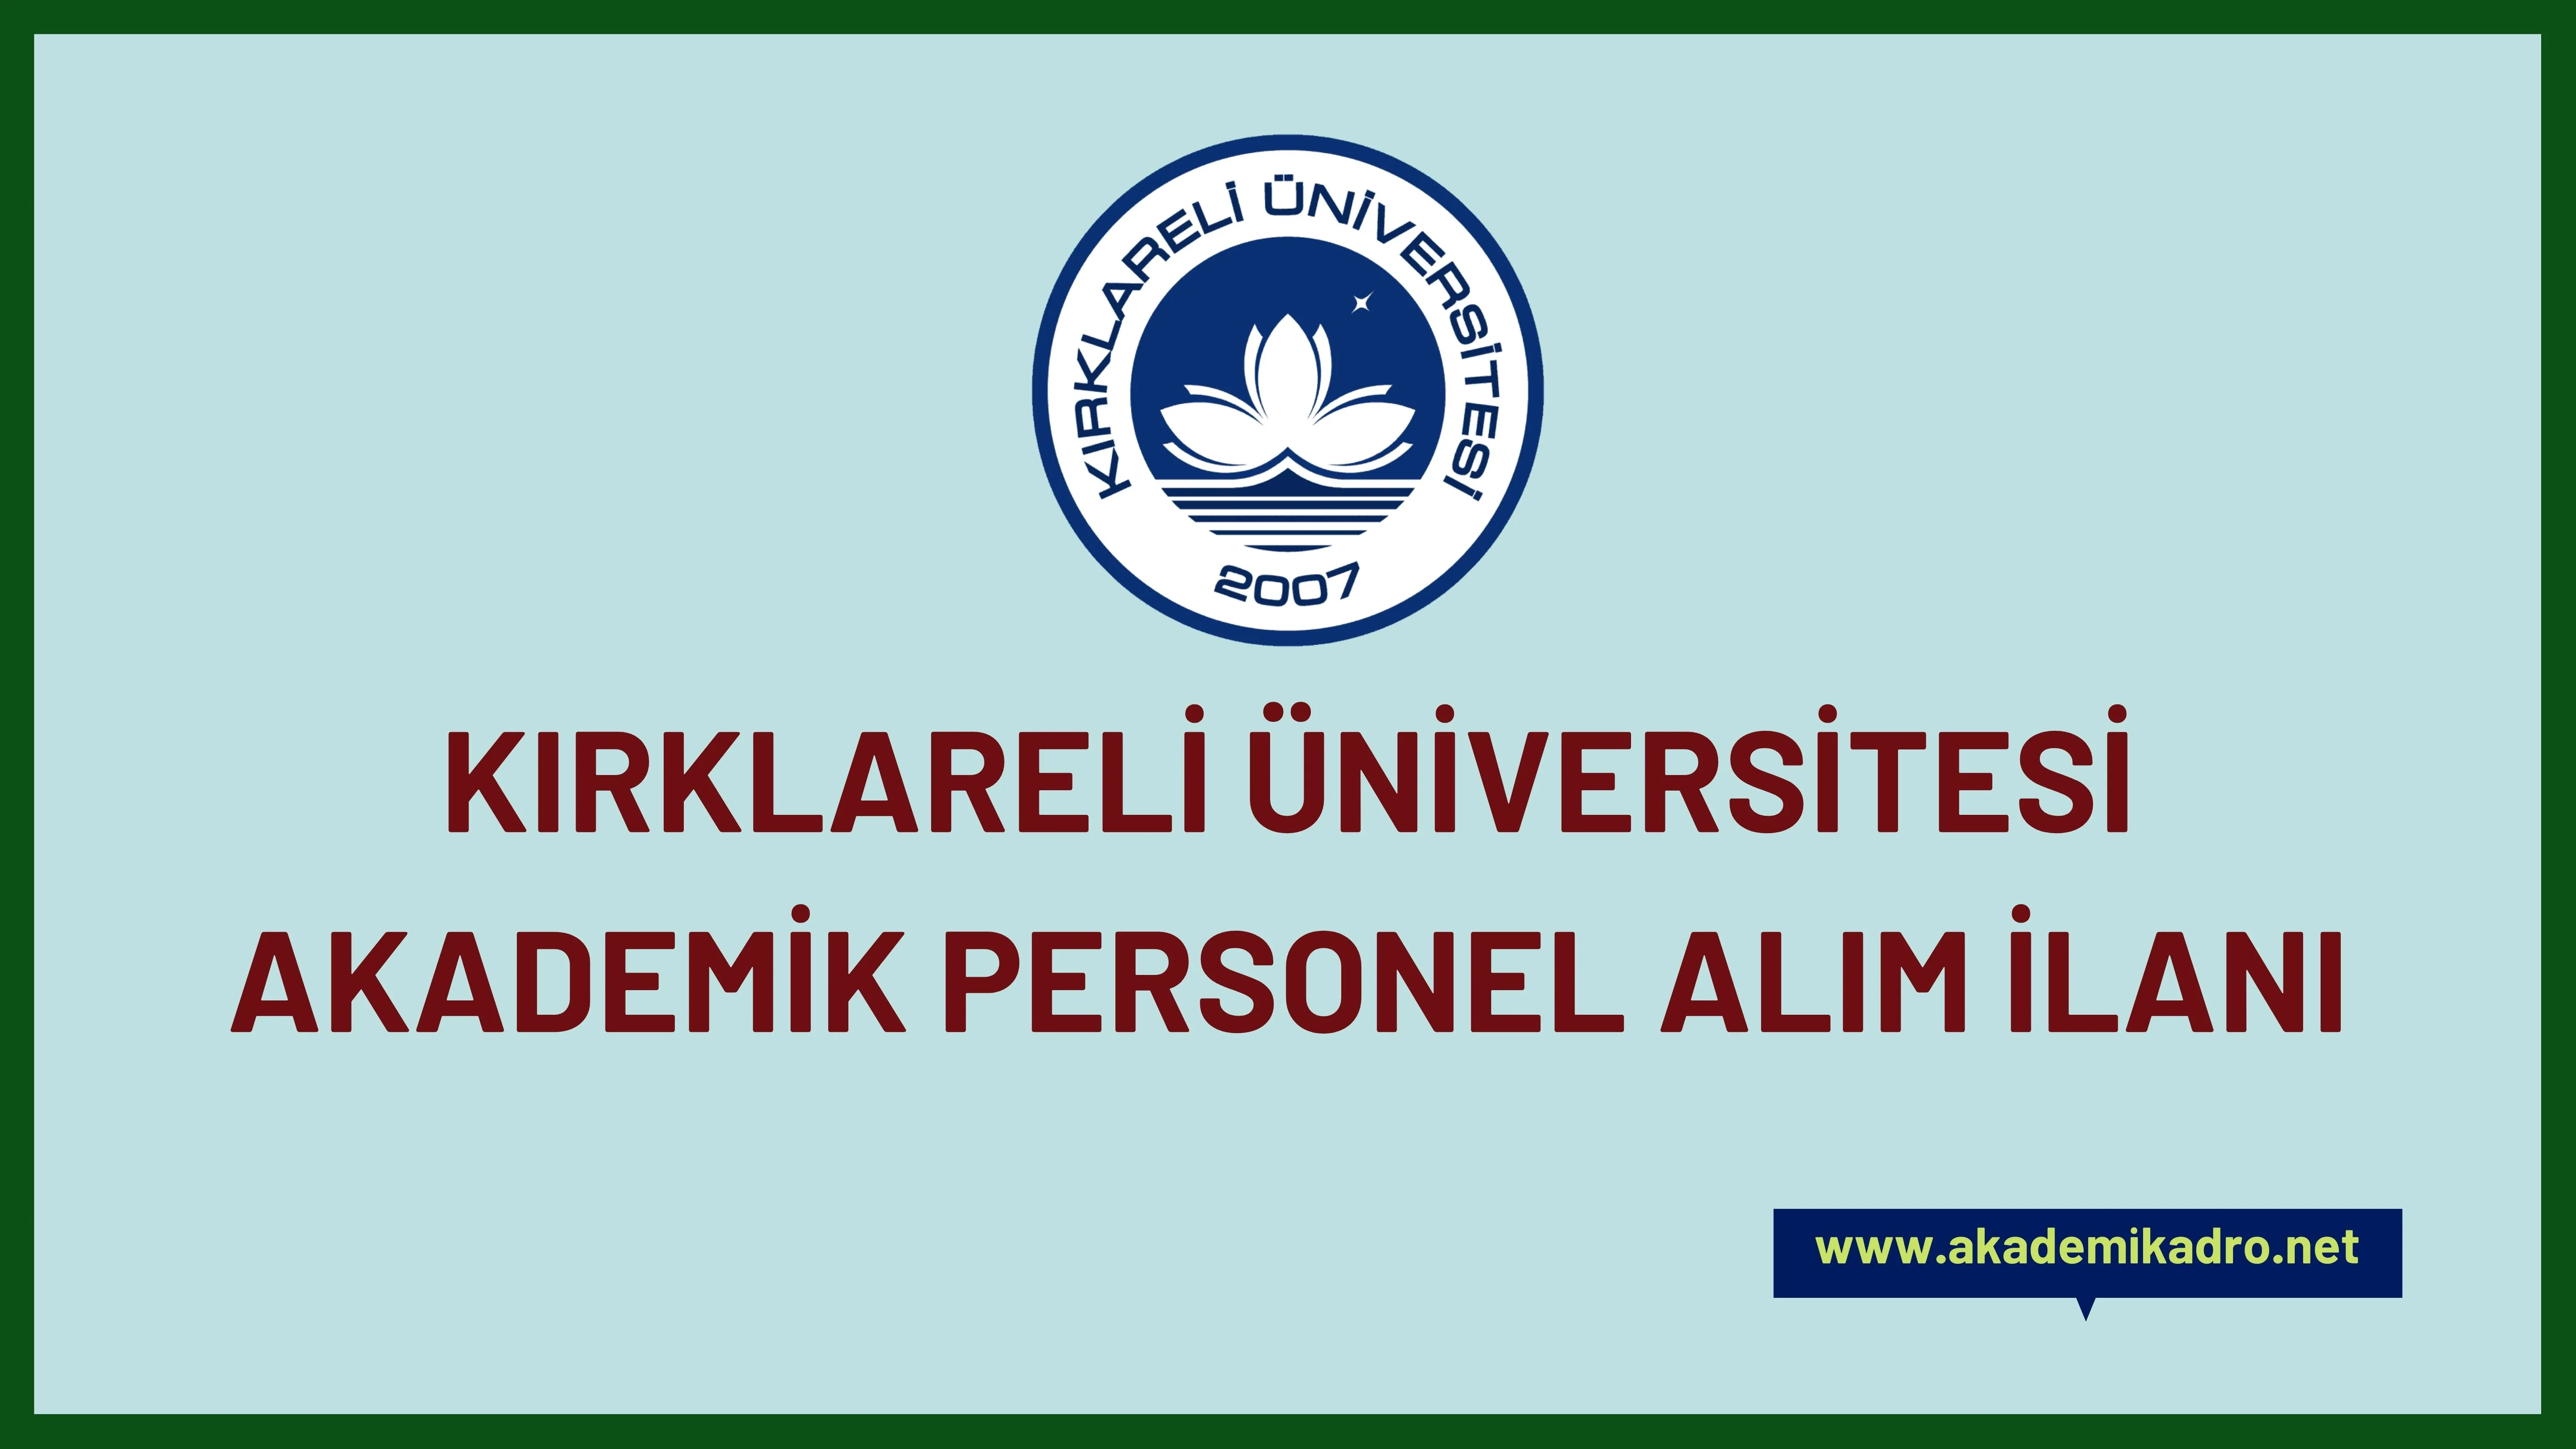 Kırklareli Üniversitesi birçok alandan 12 Öğretim üyesi alacak. Son başvuru tarihi 19 Aralık 2022.